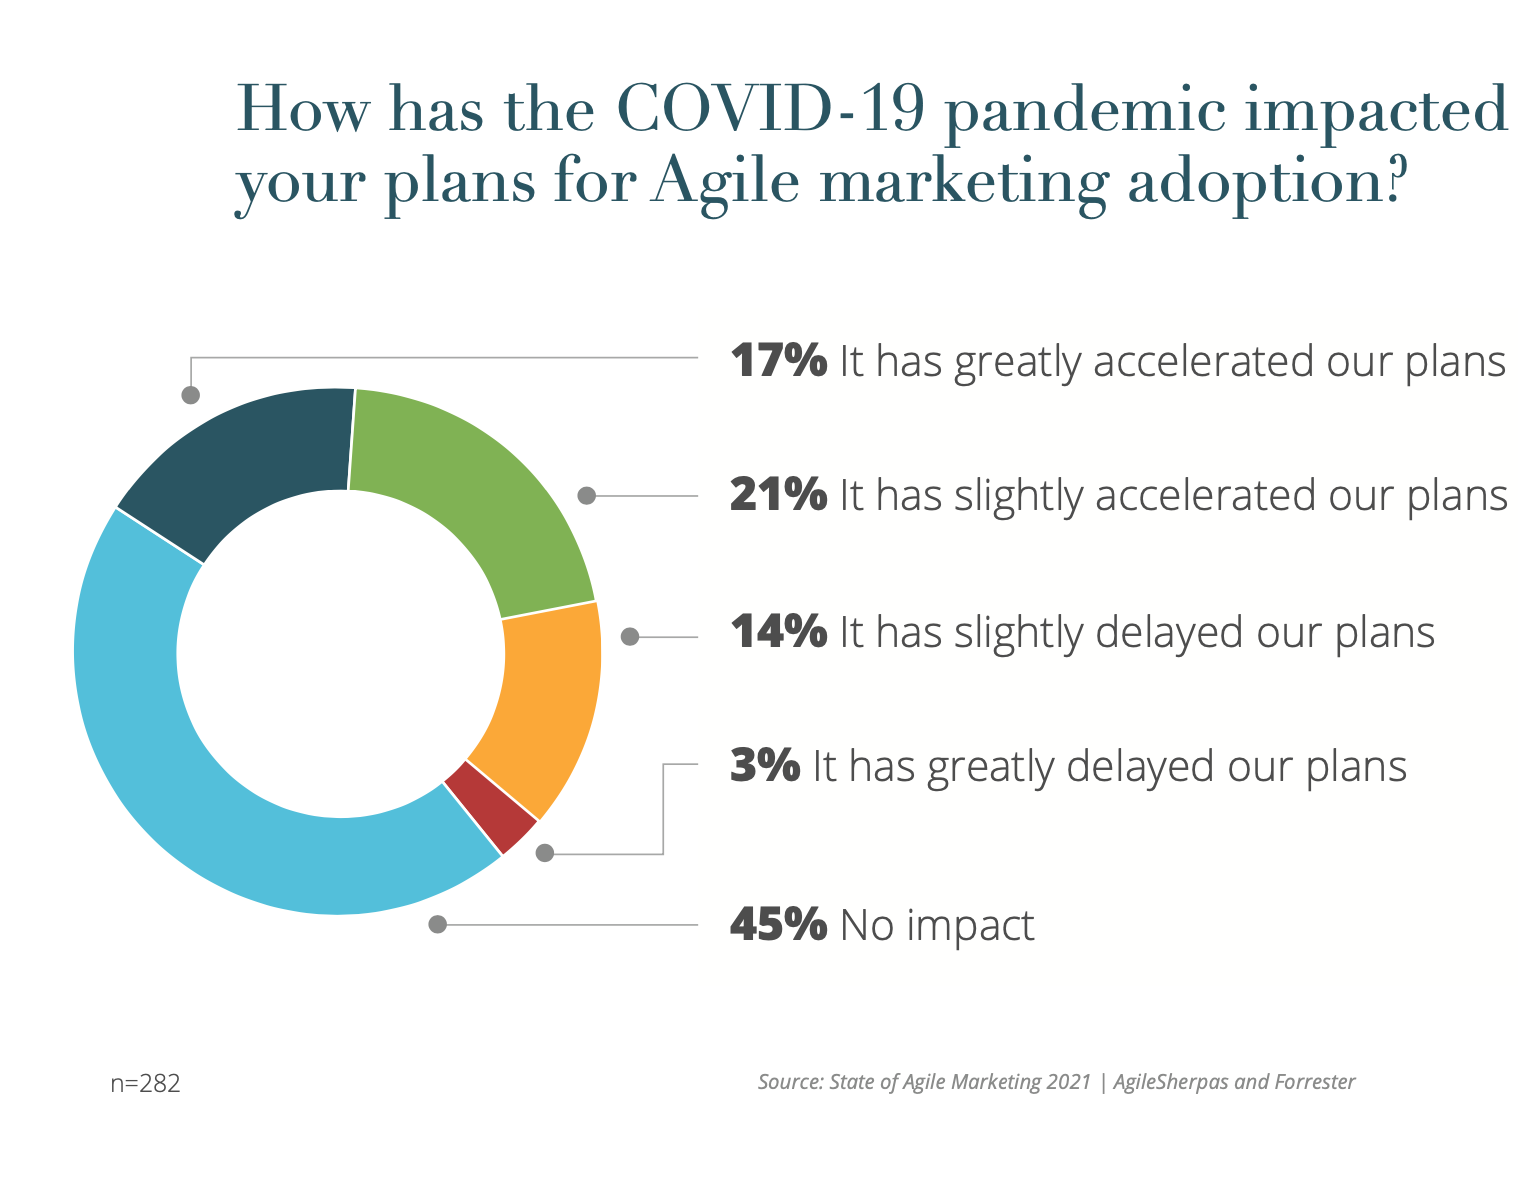 The impact of COVID-19 on Agile marketing adoption